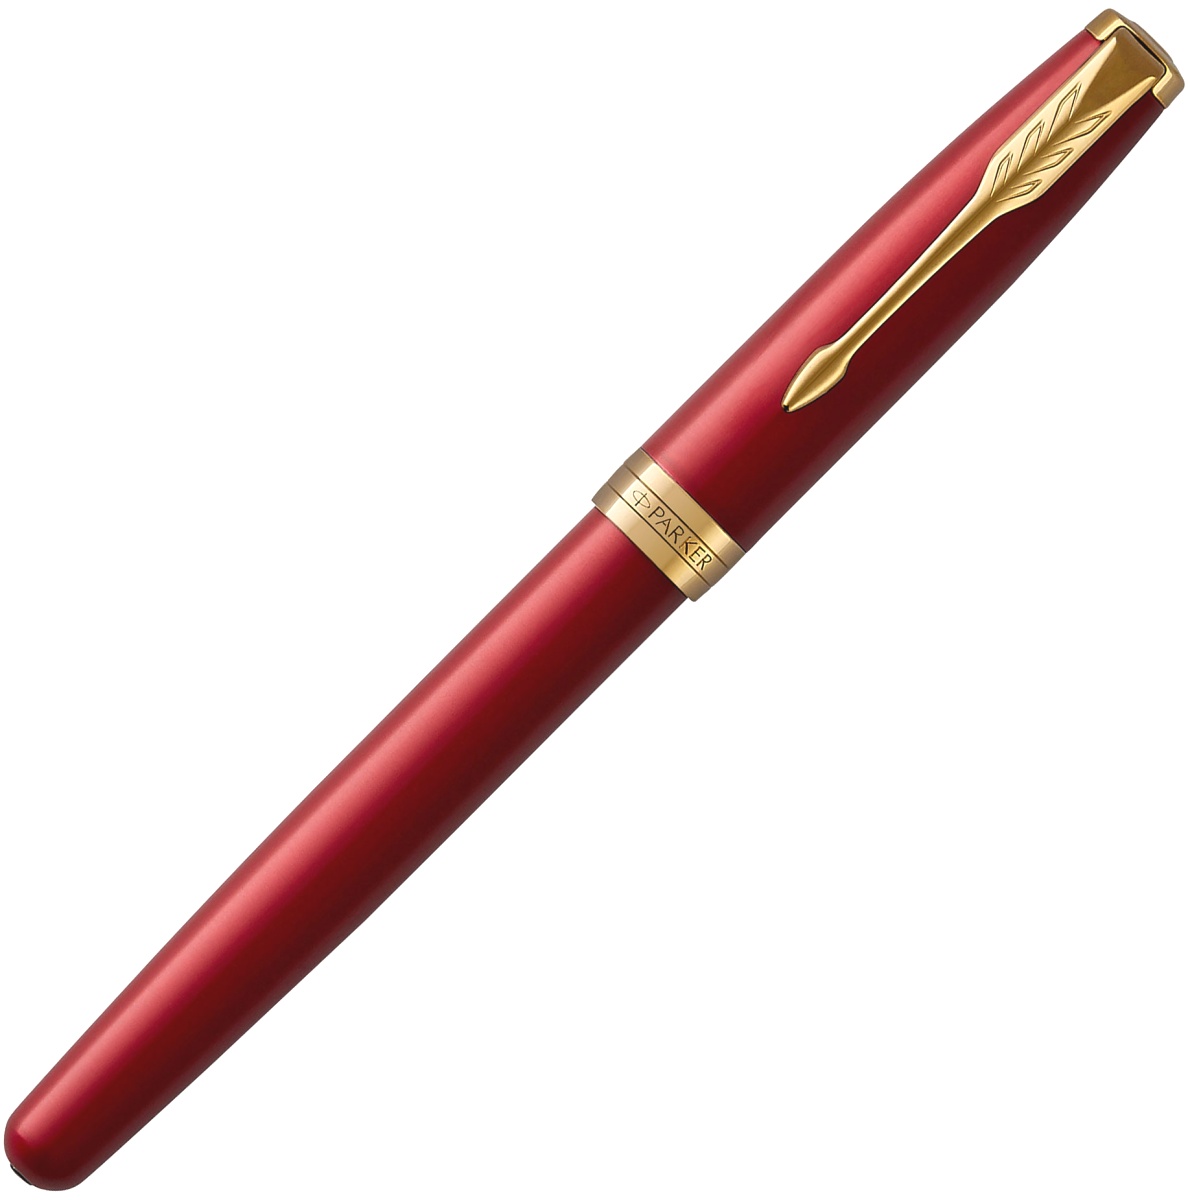  Ручка-роллер Parker Sonnet Core T539, Lacquer Red GT, фото 2